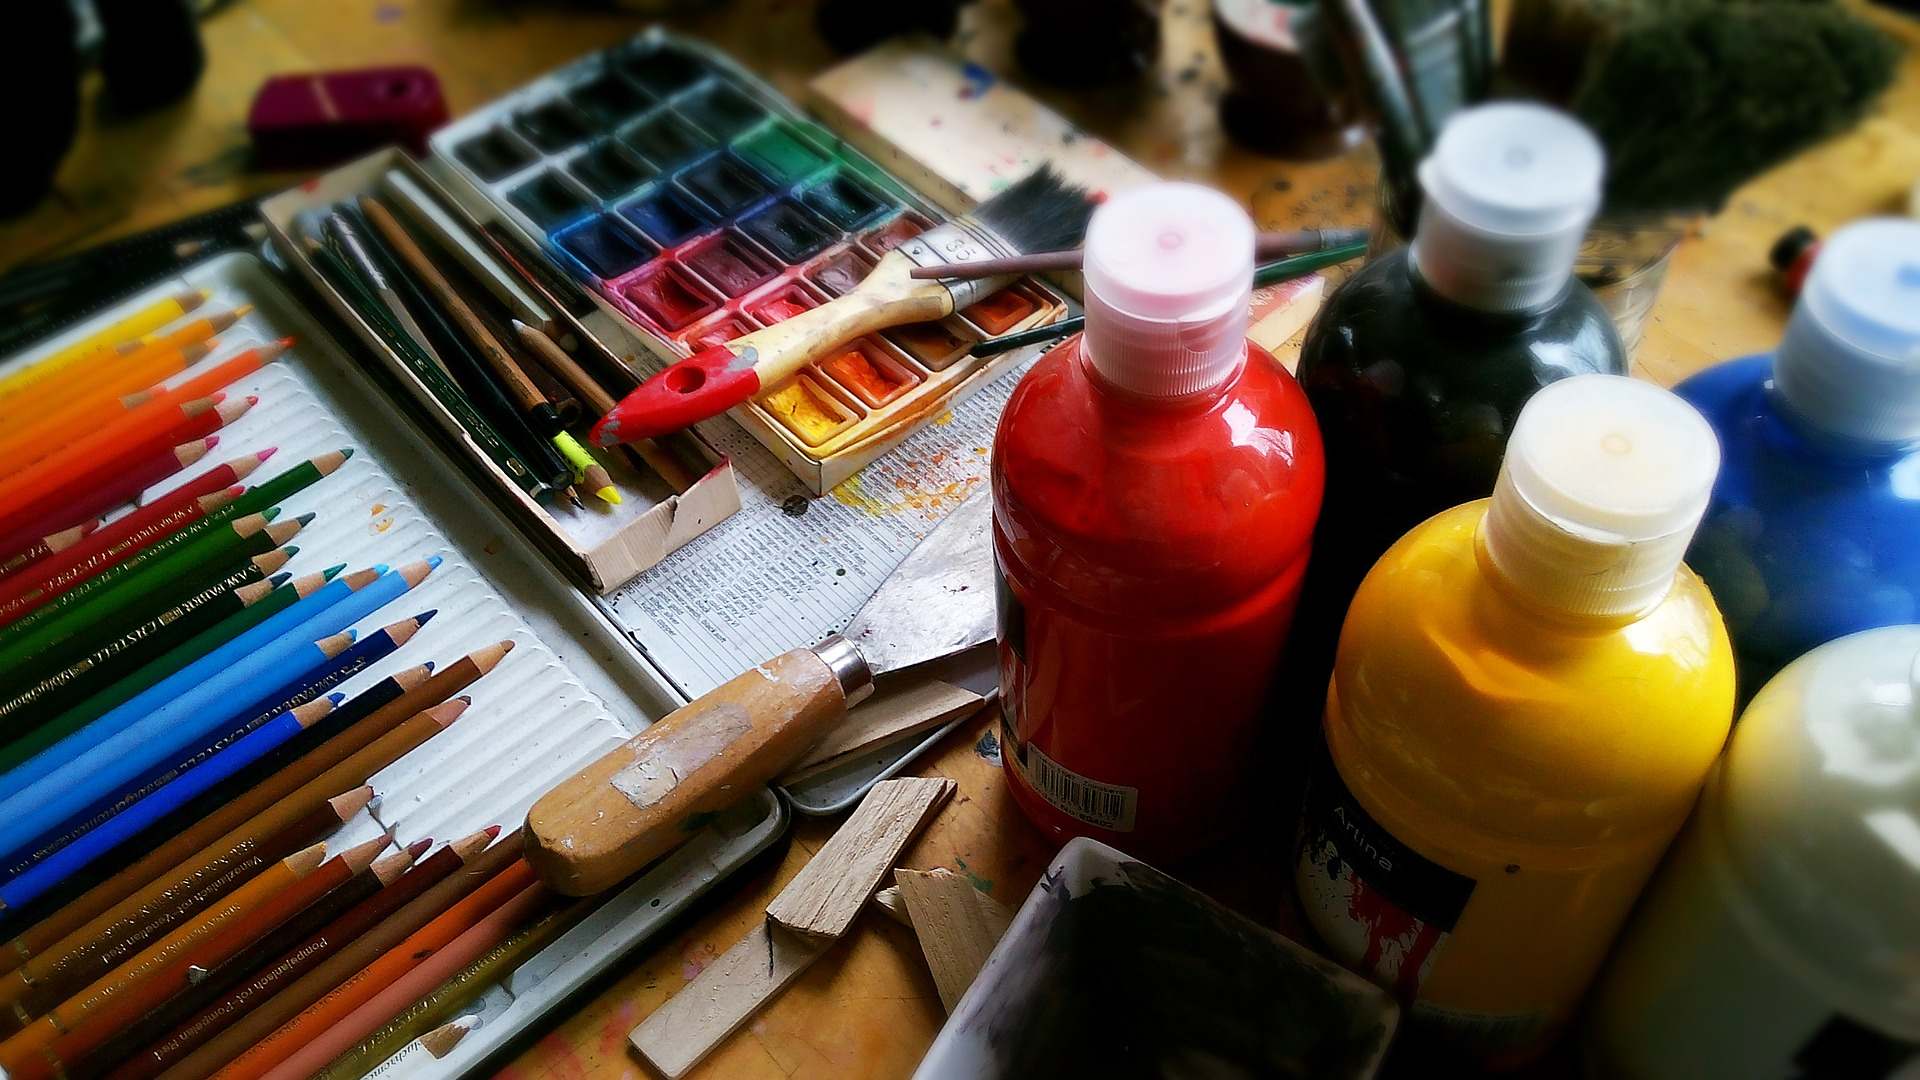 Blick auf einen Malertisch mit Wasserfarben, Farben in Flaschen, eine Spachtel und bunte Stifte